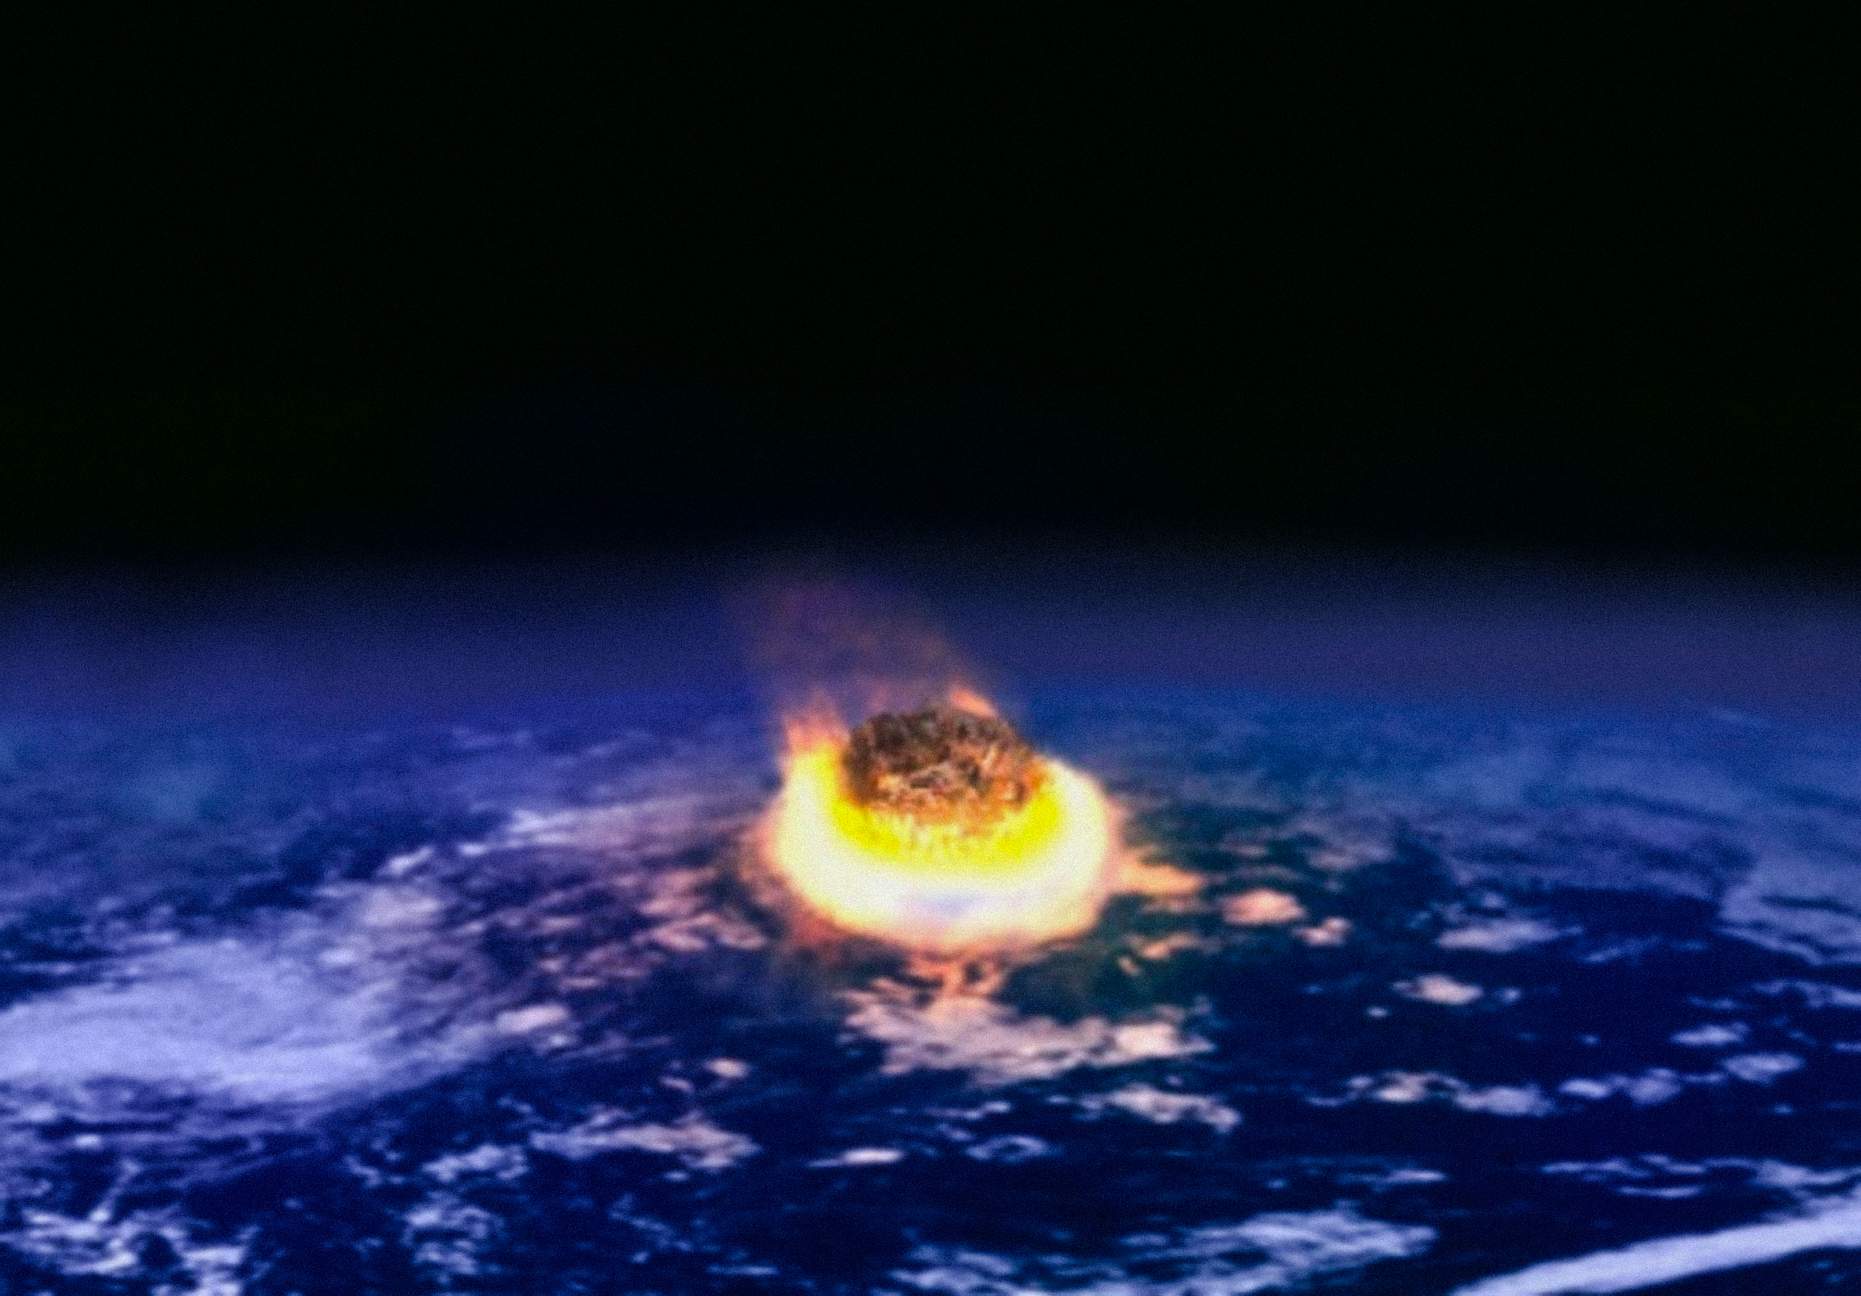 Zoltan Galántain mukaan asteikon, jossa sivilisaatiot luokitellaan, tulisi perustua niiden kykyyn selviytyä katastrofeista, erityisesti sellaisista katastrofeista, jotka ovat peräisin kosmisesta alkuperästä, kuten asteroidin törmäyksestä.